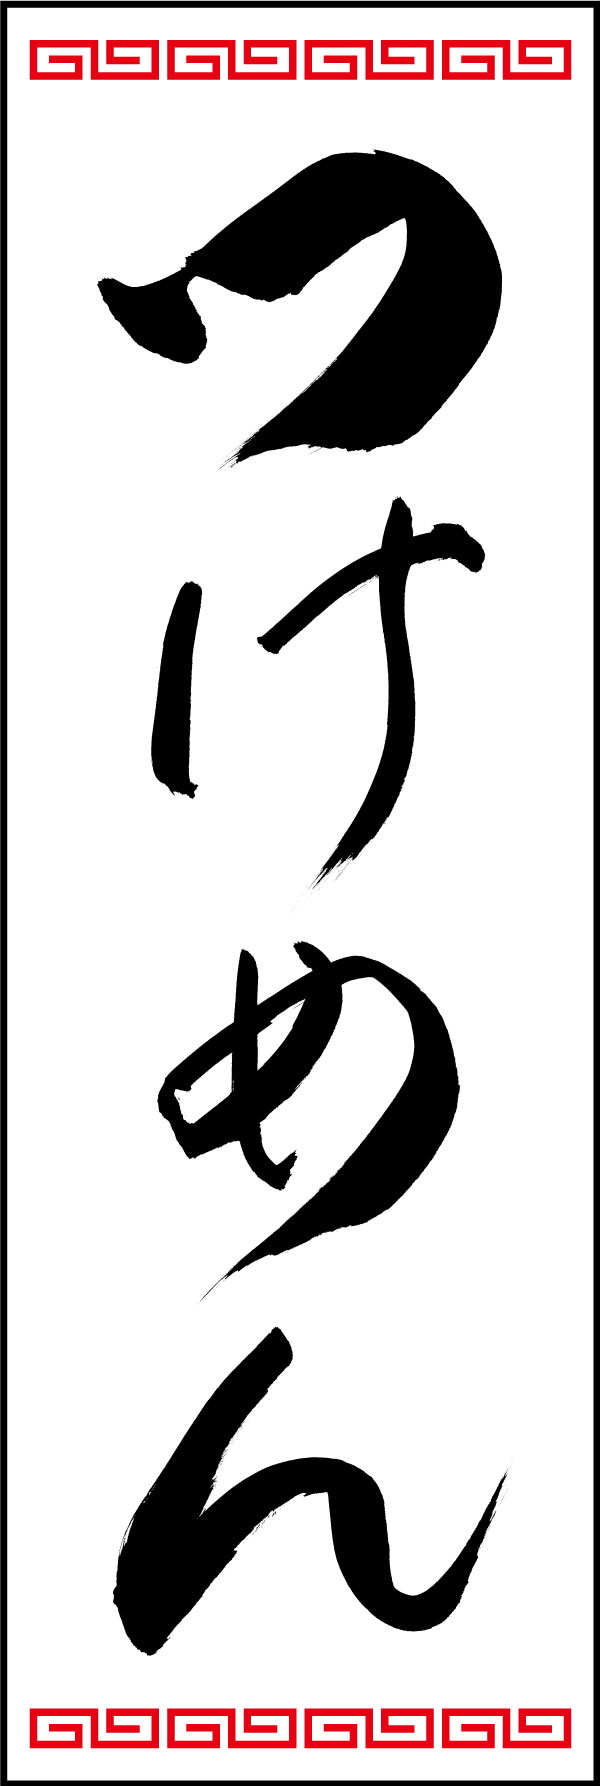 つけ麺 139_09 「つけめん」ののぼりです。江戸文字職人 加藤木大介氏による、手書きの筆文字です。完全書き下ろし、唯一無二ののぼりは当店だけのオリジナル商品です。（Y.M）